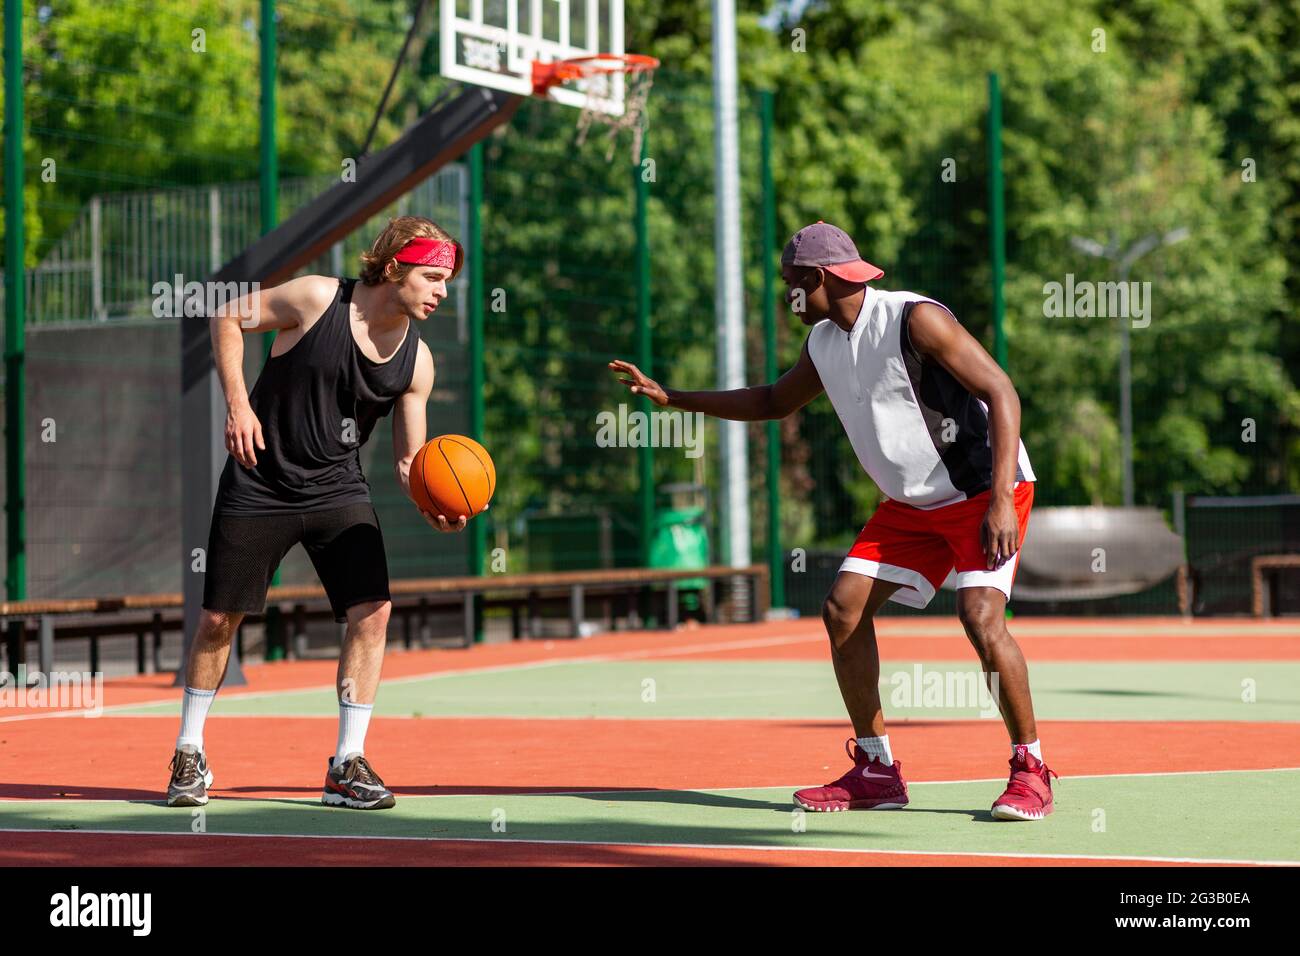 Deux jeunes sportifs jouant au basket-ball au stade par temps chaud. Les  amateurs de basket-ball du millénaire apprécient le jeu amical et se  prépare au tournoi. Extérieur Photo Stock - Alamy